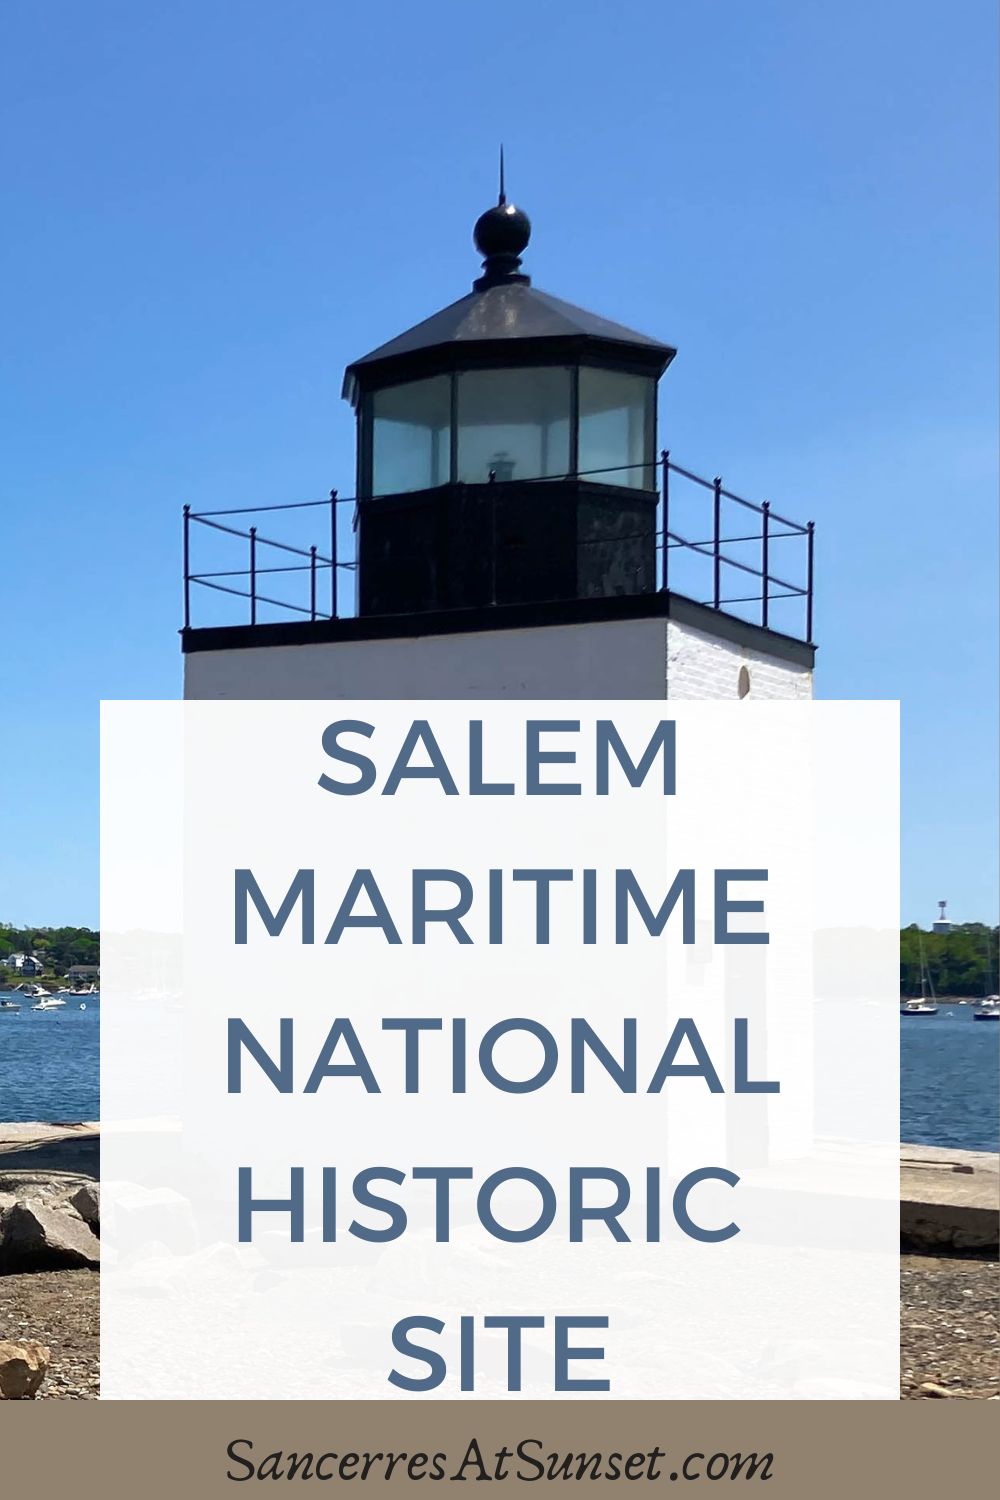 Salem Maritime National Historic Site in Massachusetts